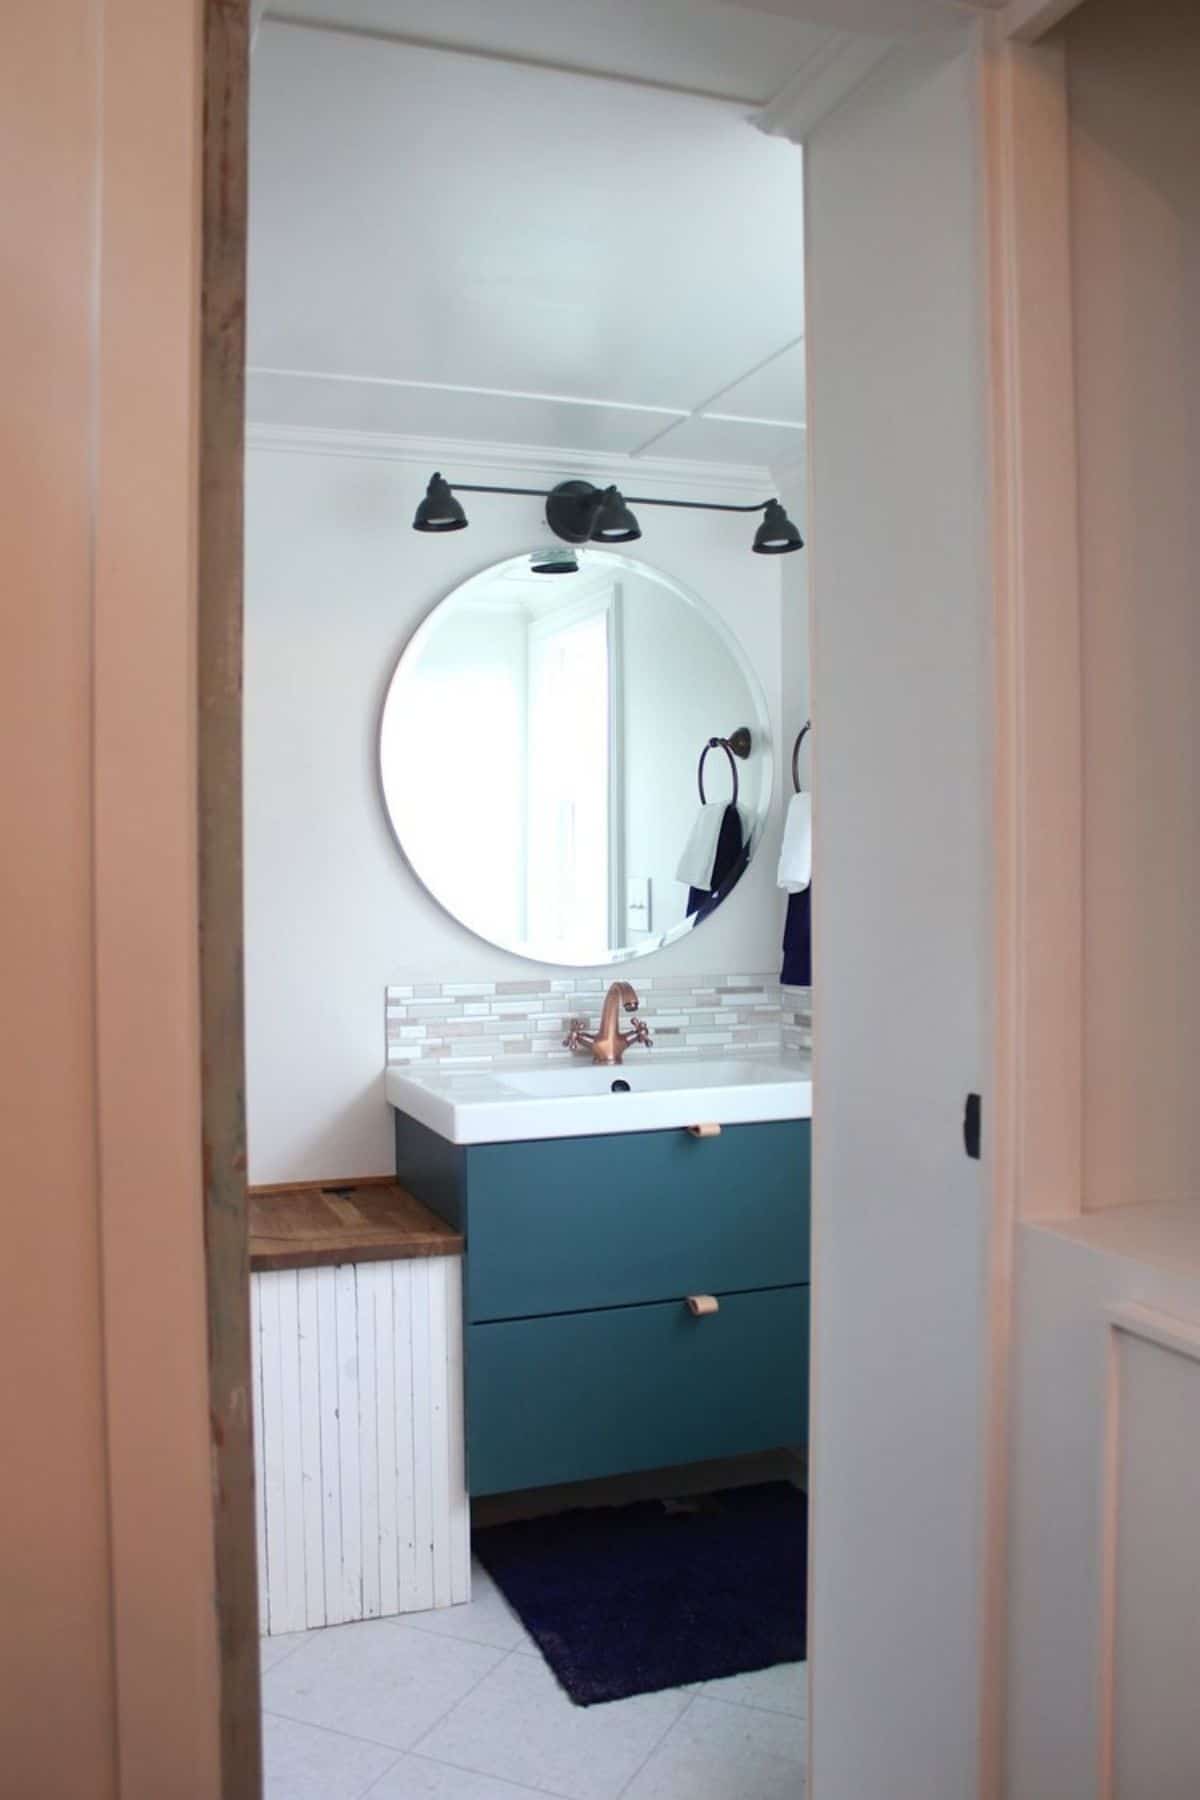 View into bathroom from door with teal vanity